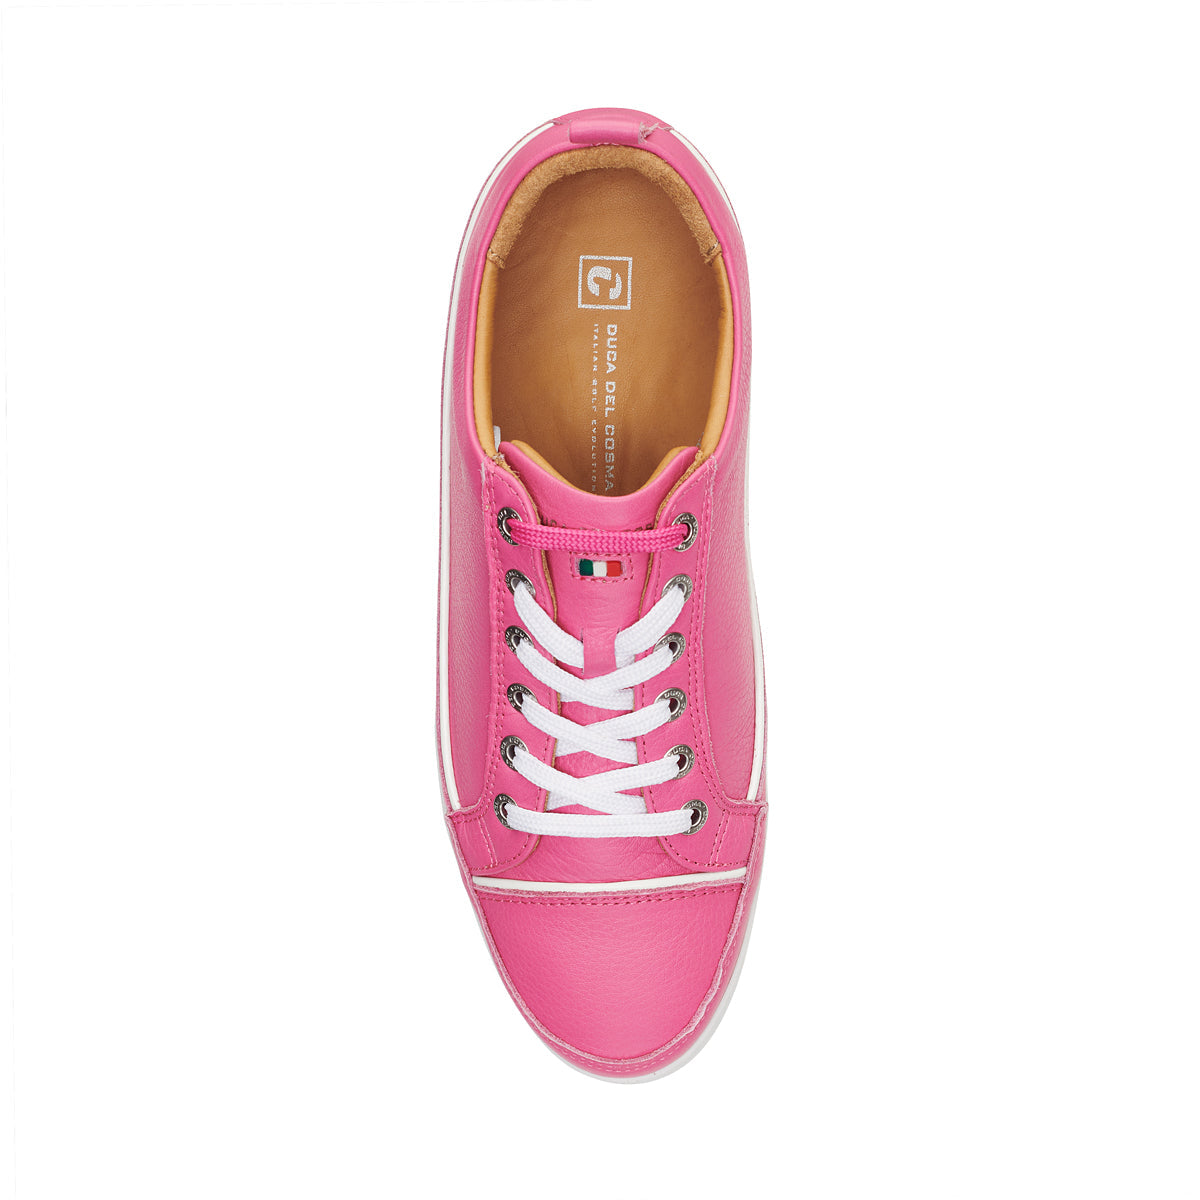 Festiva Pink - Women's Golf Shoe  